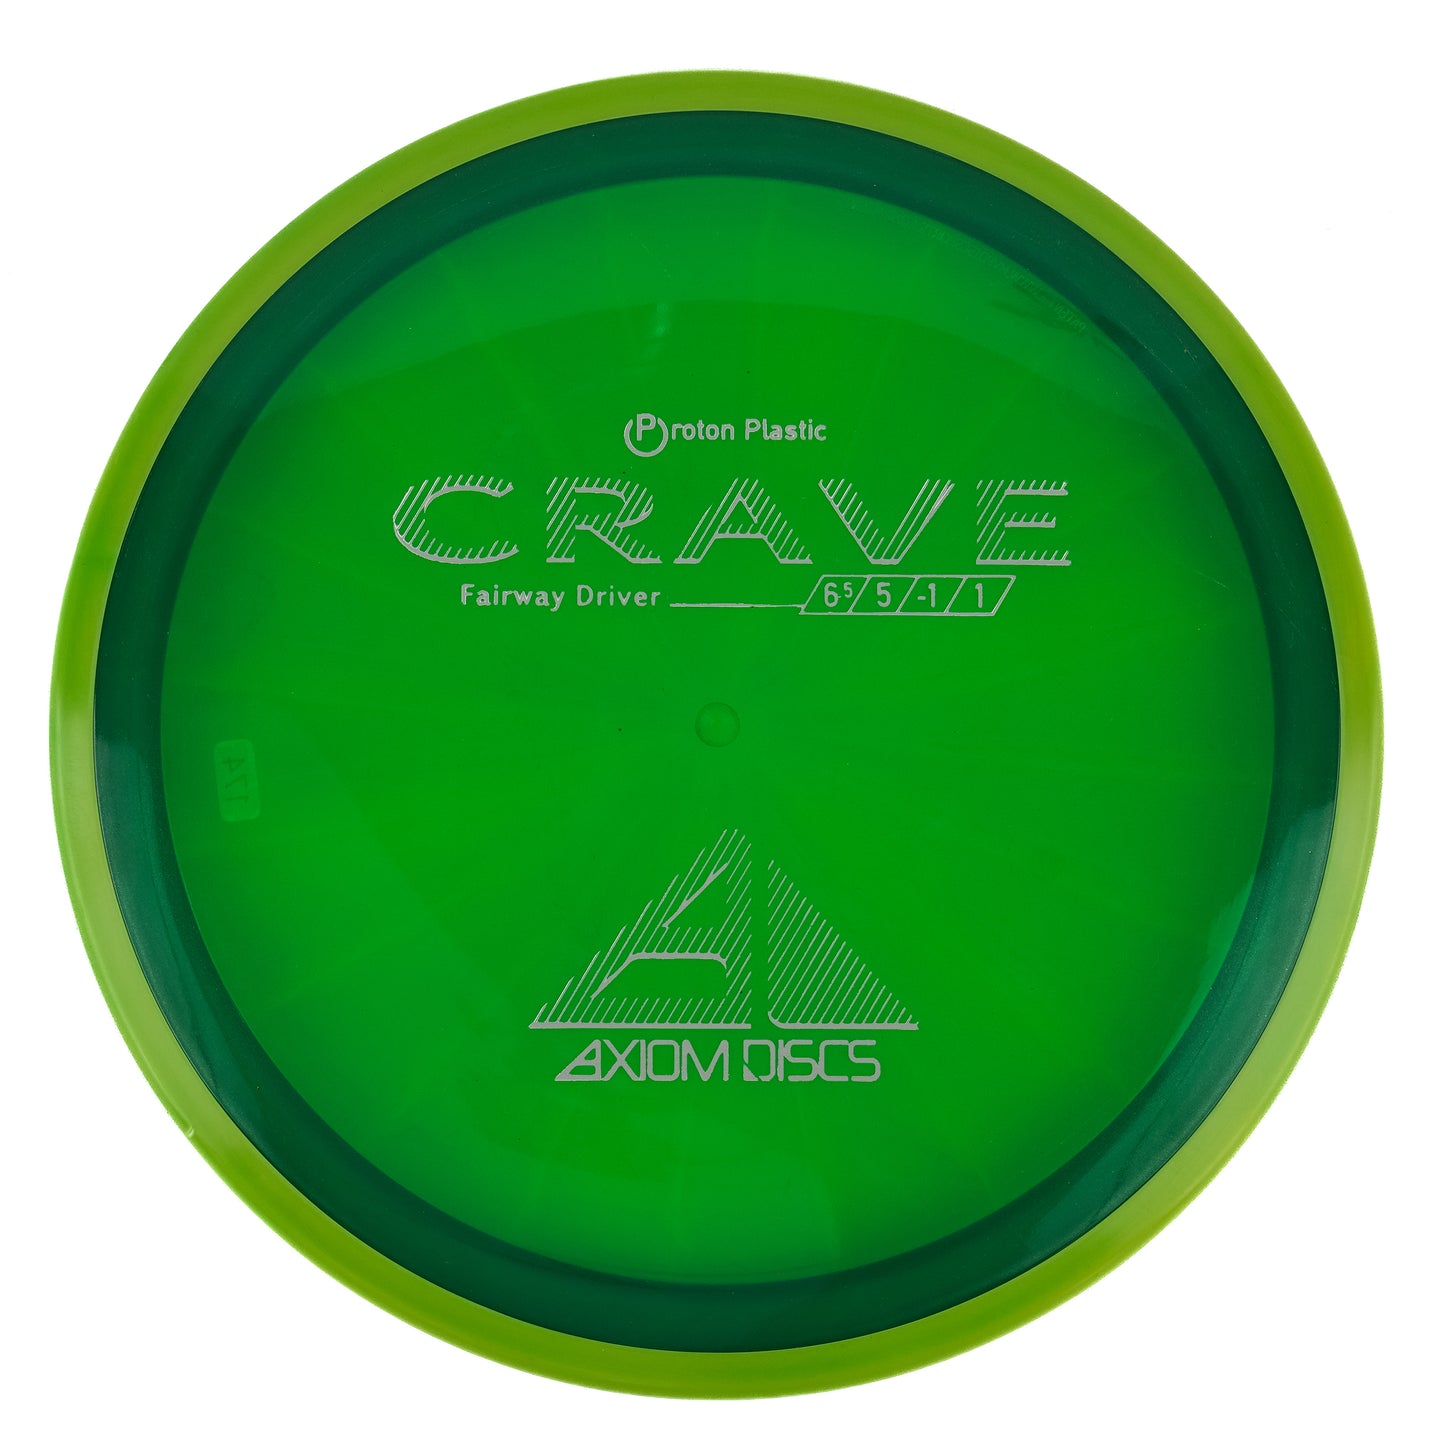 Axiom Crave - Proton 174g | Style 0003